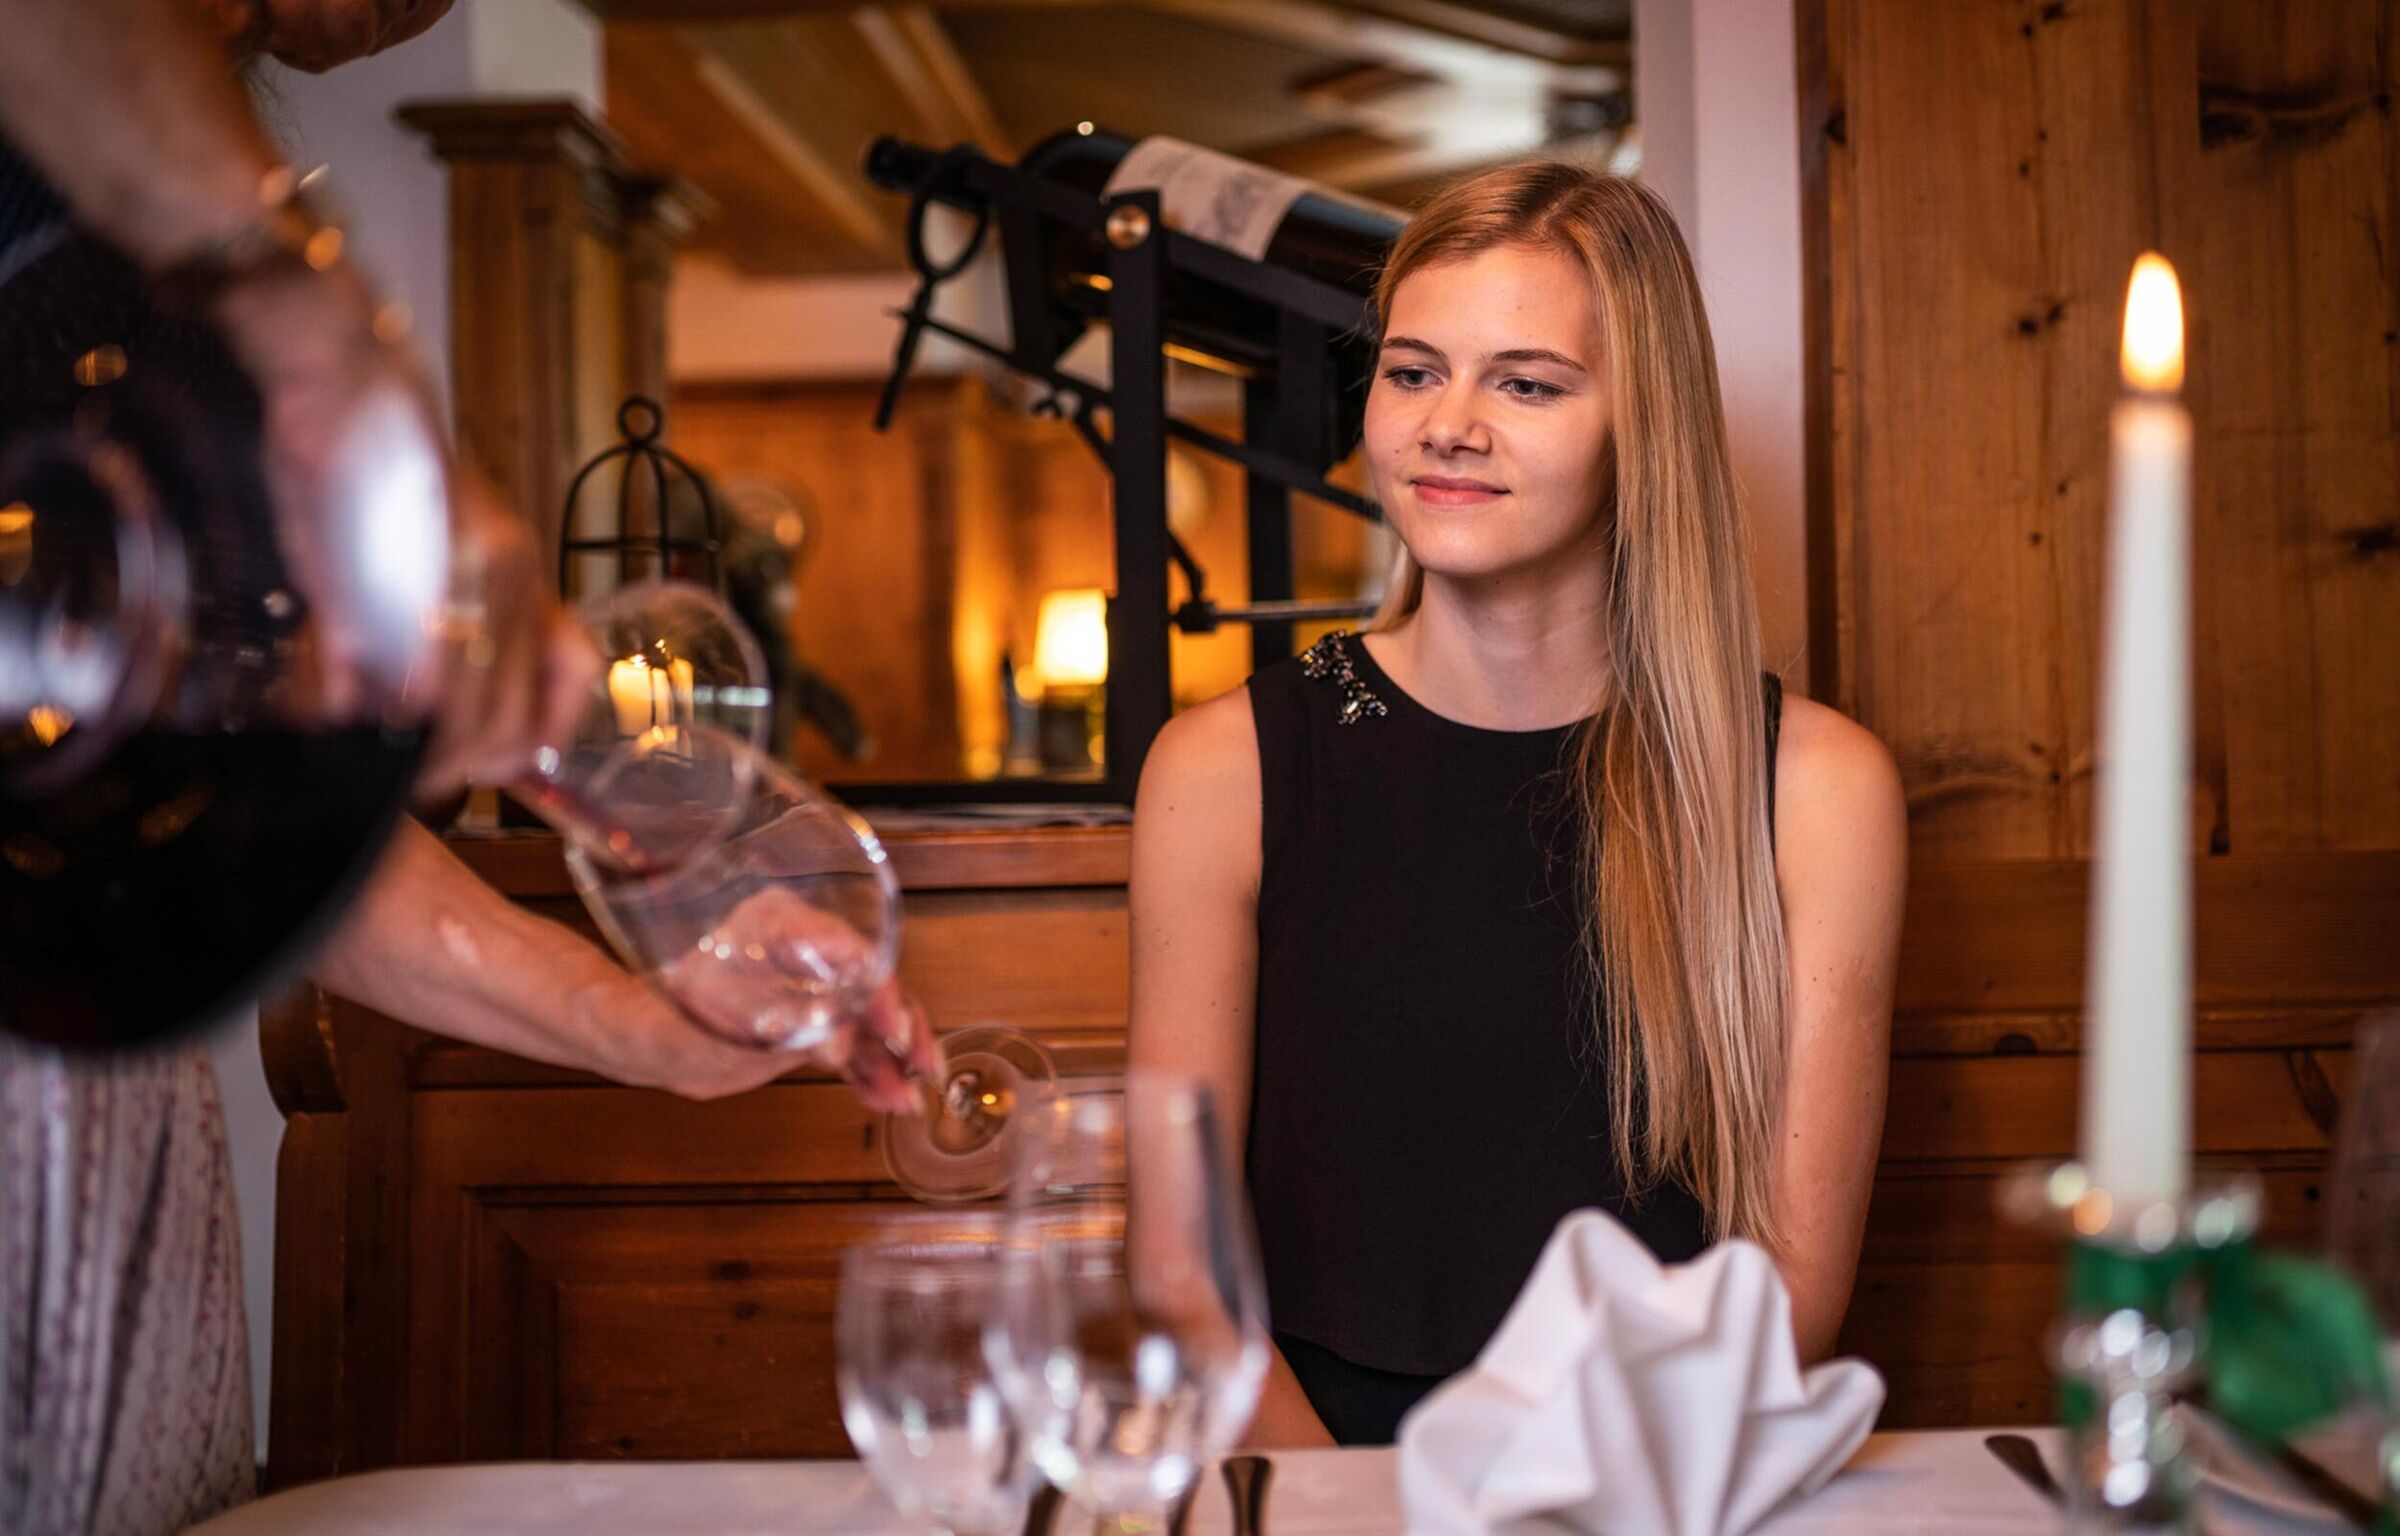 Una donna è seduta in un salotto rustico e la cameriera le ha appena versato un bicchiere di vino.